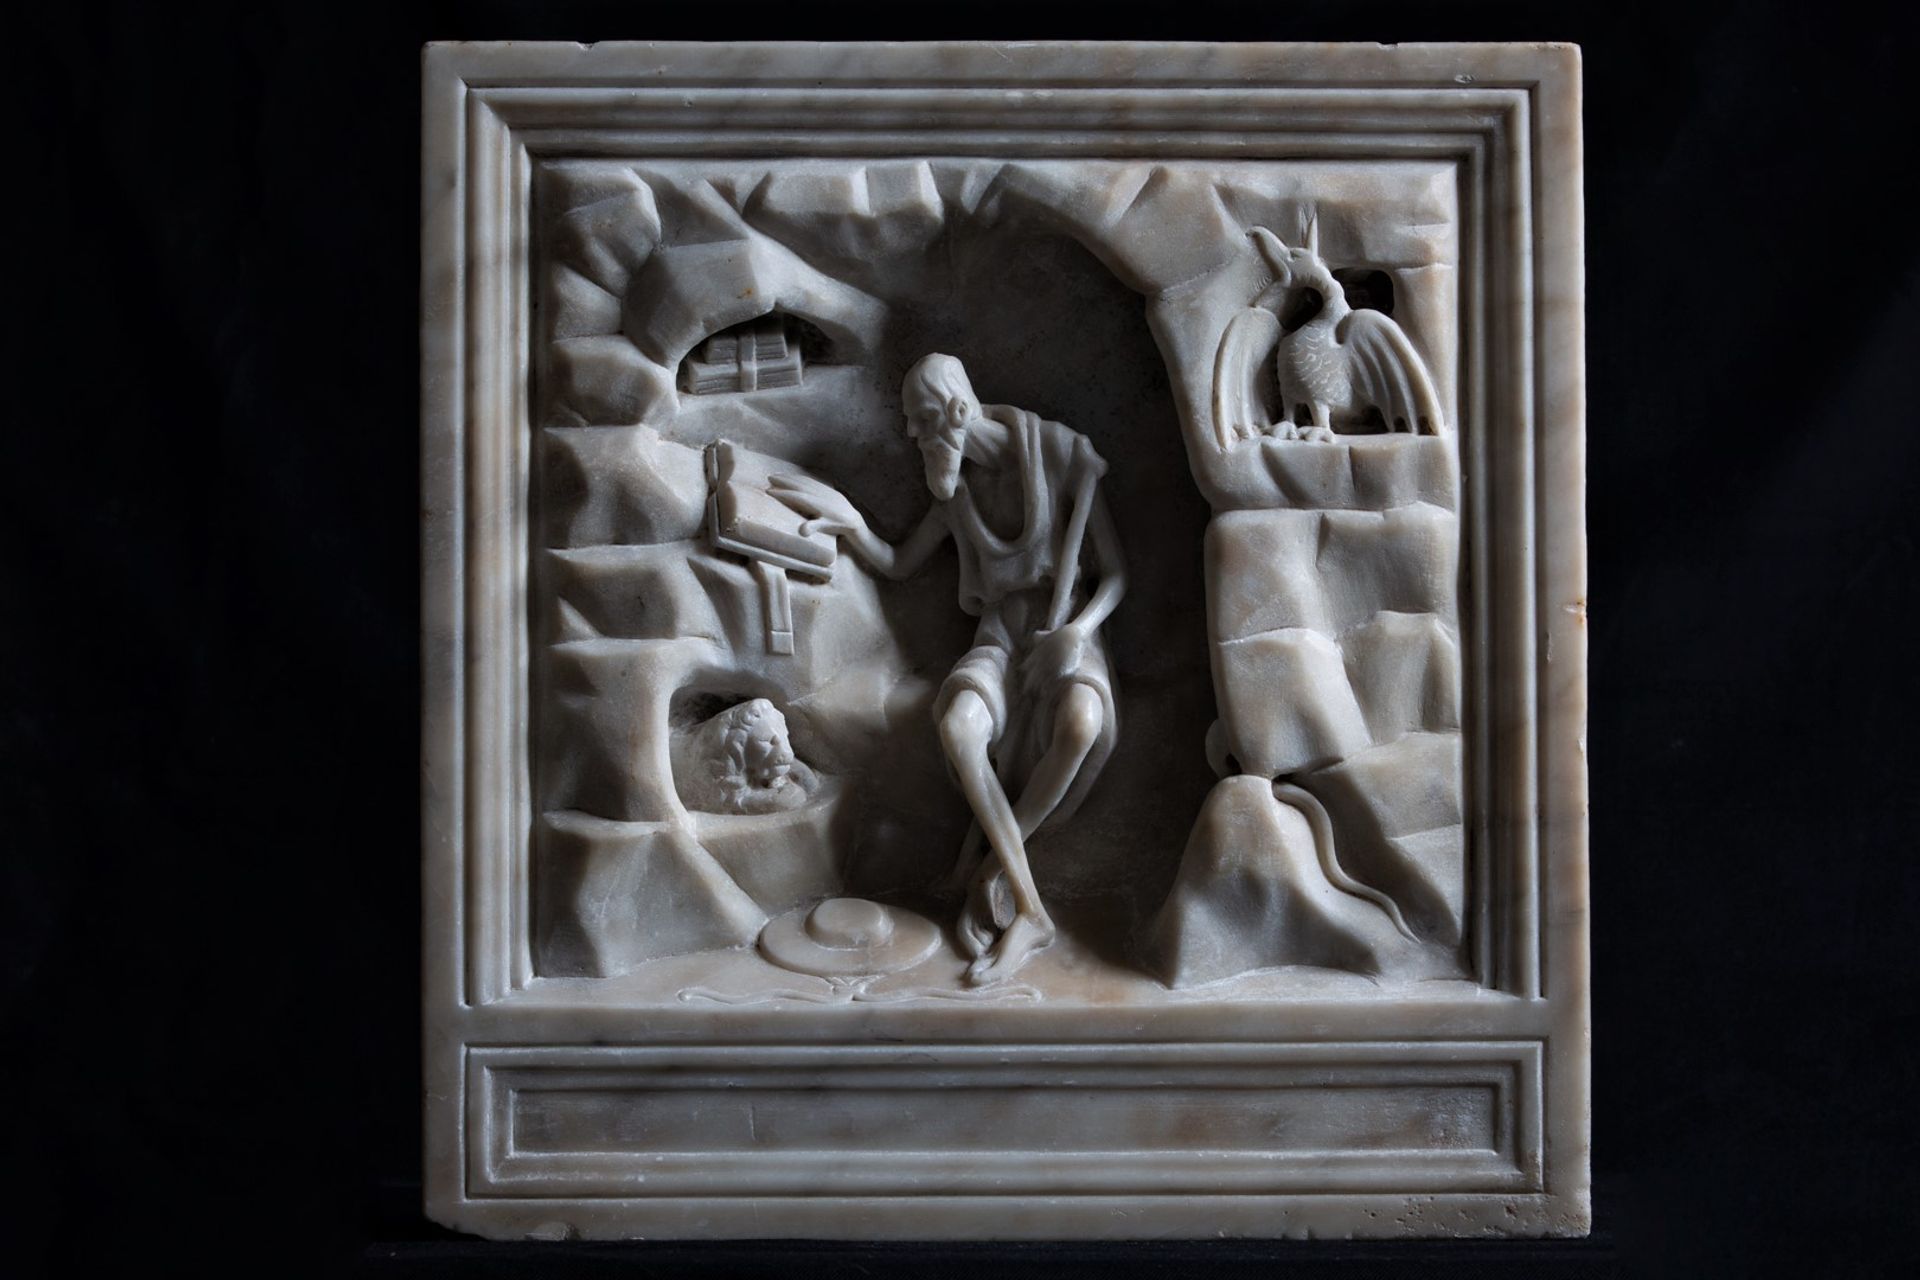 圣杰罗姆在他的洞穴和书房的混合，他的狮子和红衣主教的帽子的特征。右边的小公鸡形象是蛇怪，一种代表诱惑的神话怪兽。作者:Andrea Aleši，达尔马提亚文艺复兴时期最好的雕塑家之一，大约1480年，扎达尔